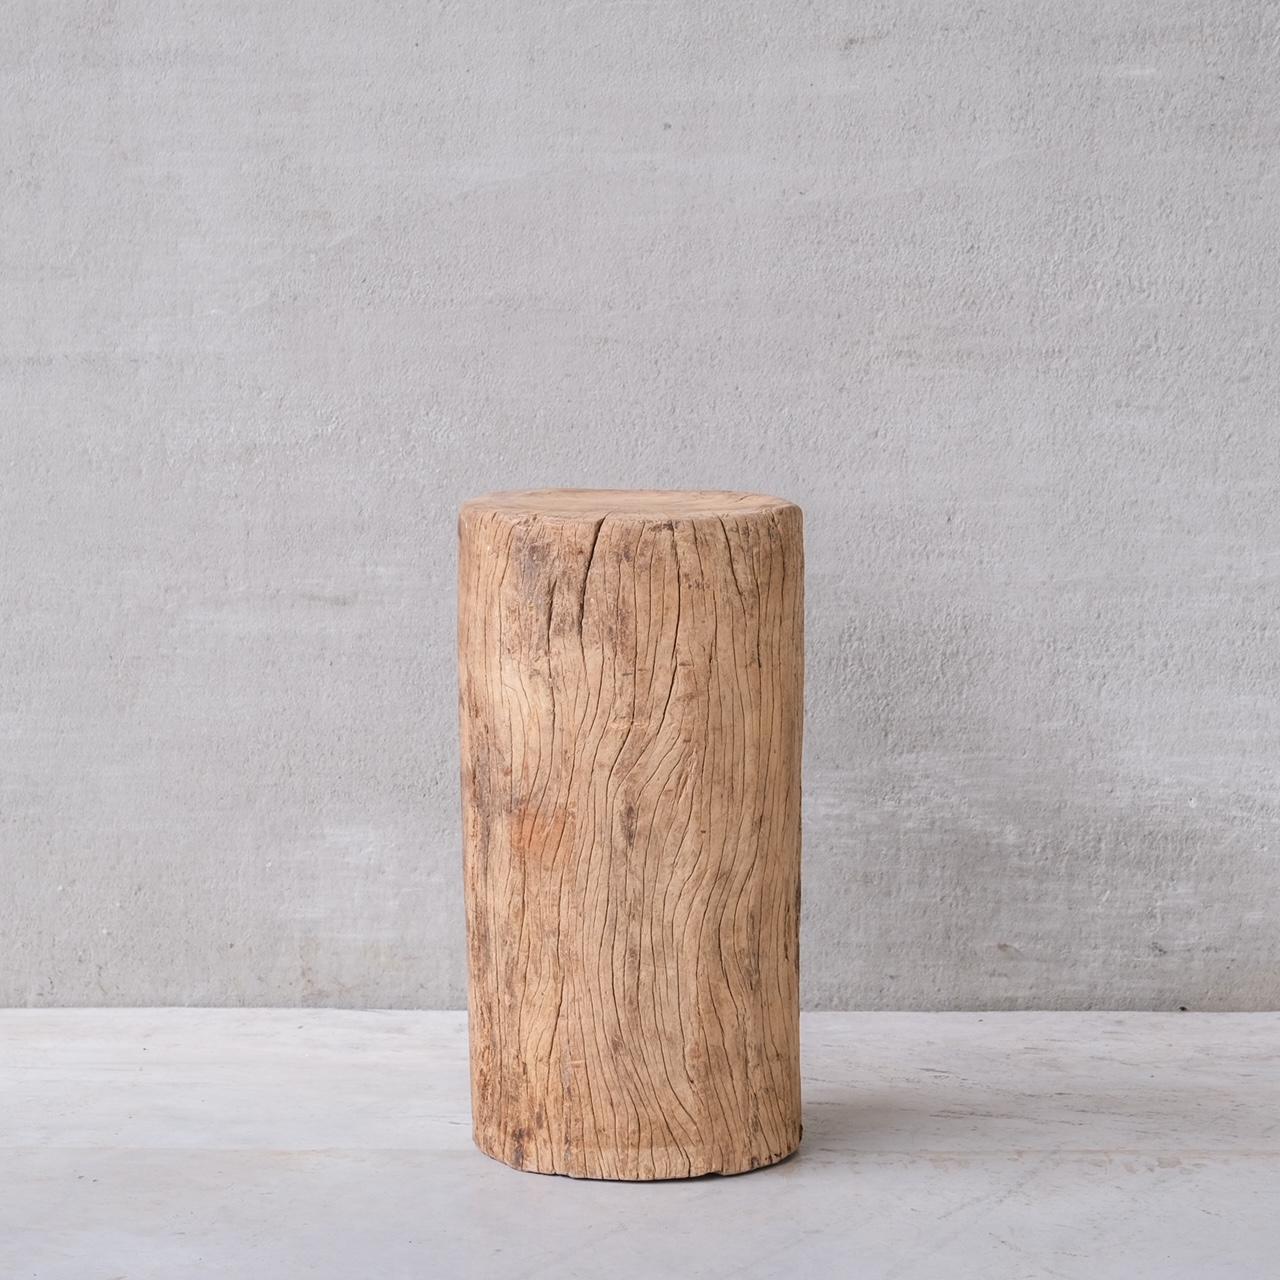 Ein großer, dicker Holzsockel in primitiver, natürlicher Form.

Frankreich, ca. 1930er Jahre.

Allerdings ist es schwierig, das Alter genau zu bestimmen.

Wabi-sabi in der Natur, voller herrlicher Unvollkommenheiten der Natur, ideal als